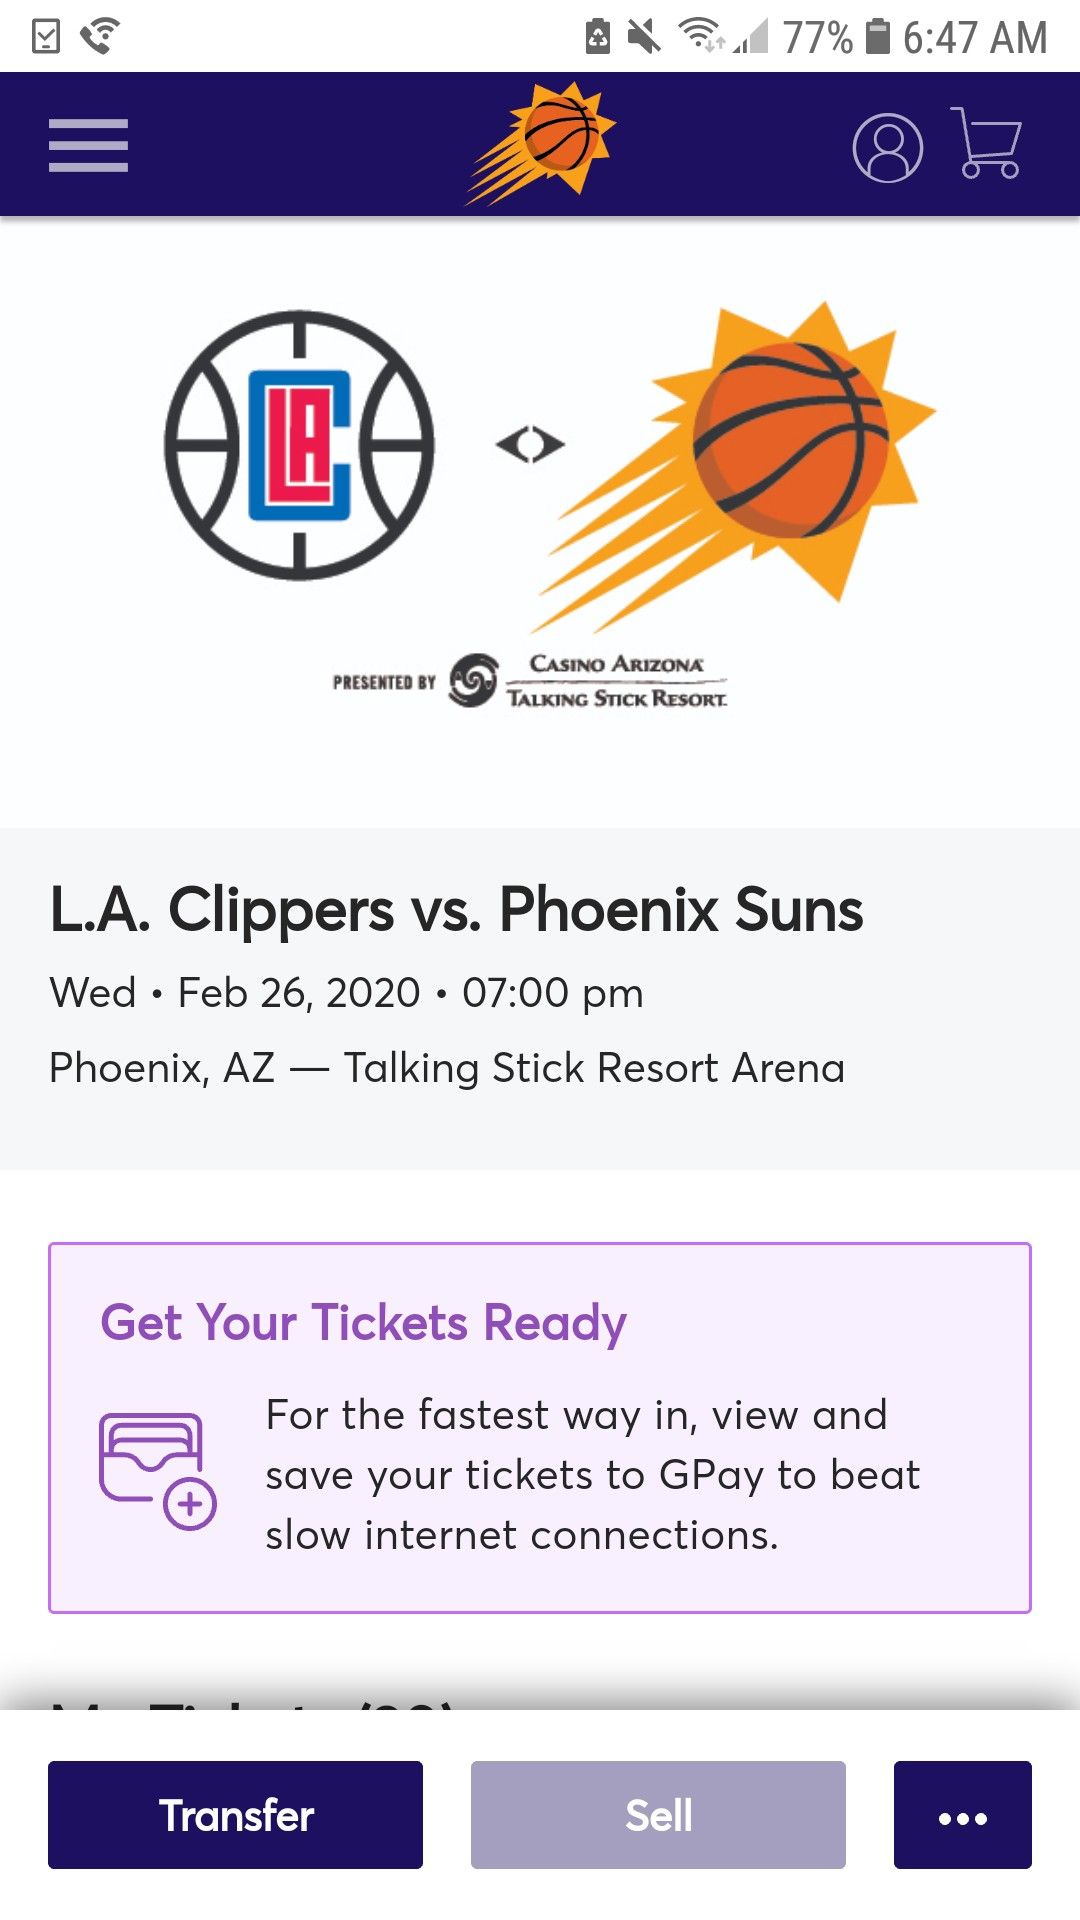 Phoenix suns vs la clippers tickets tonight